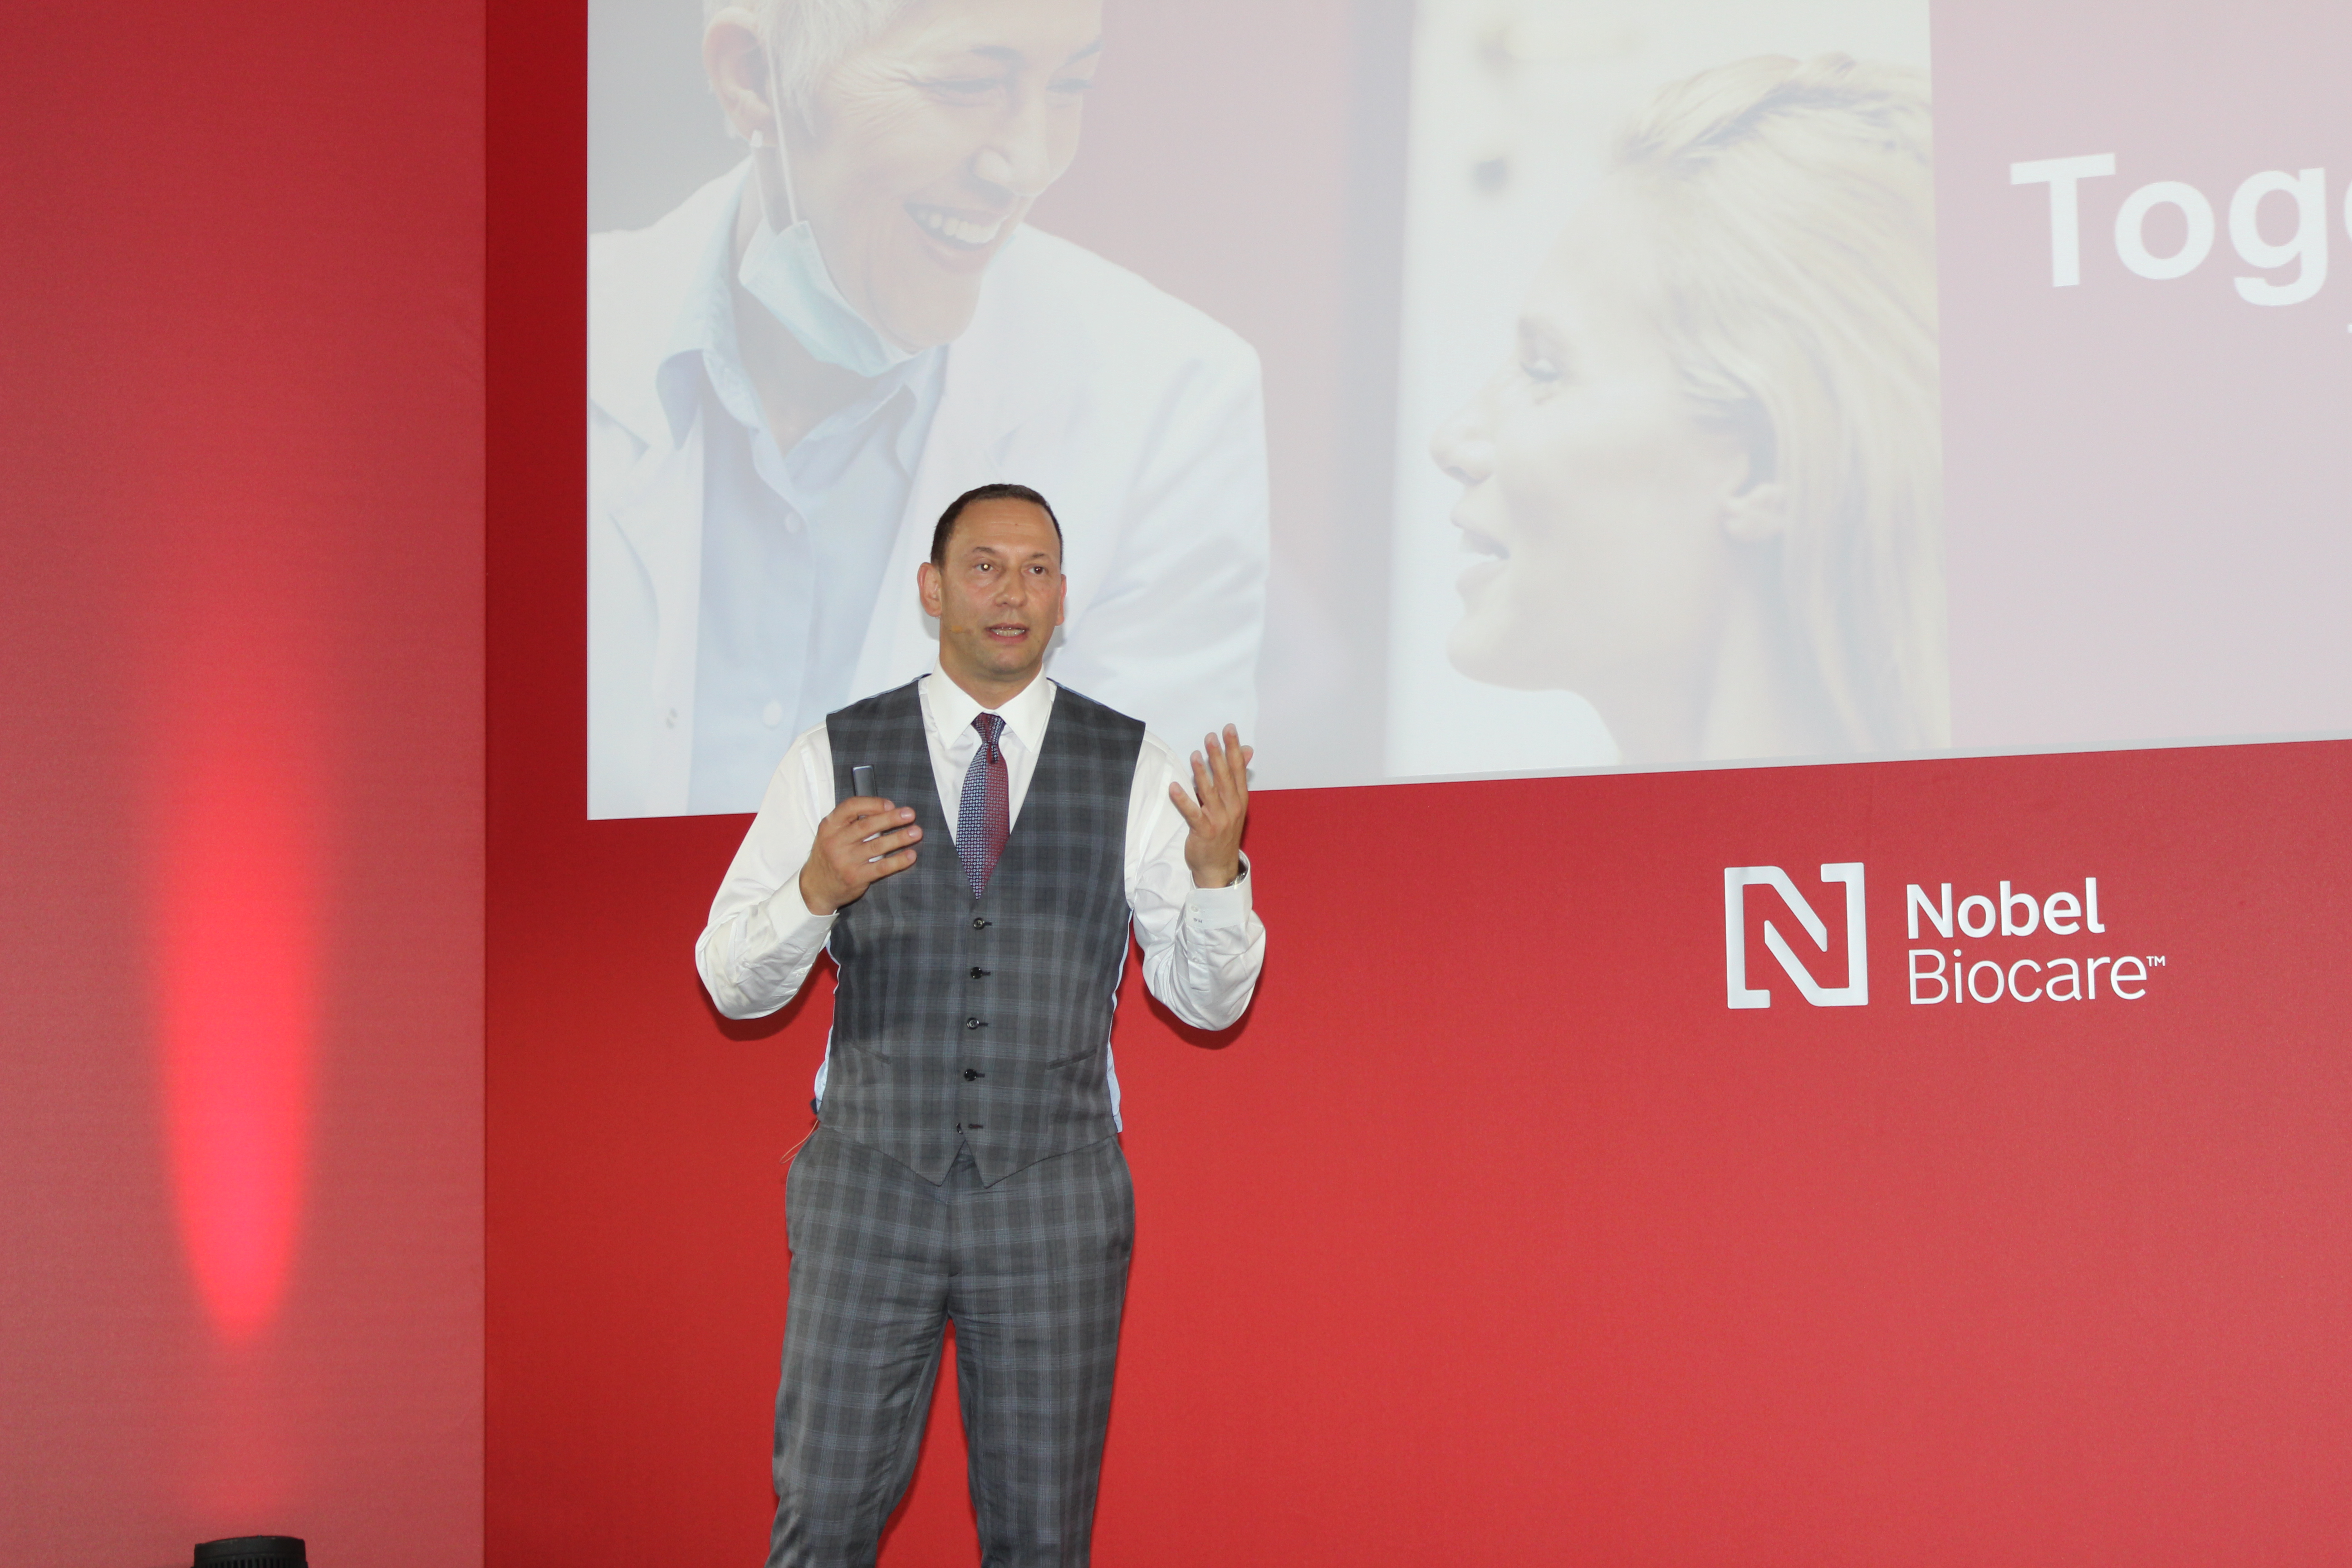 El presidente de Nobel Biocare, Hans Geiselhöringer, explicó que el nuevo sistema de implantes N1 se lanza al mercado tras más de cinco años de perfeccionamiento científico y clínico. FOTO: DM